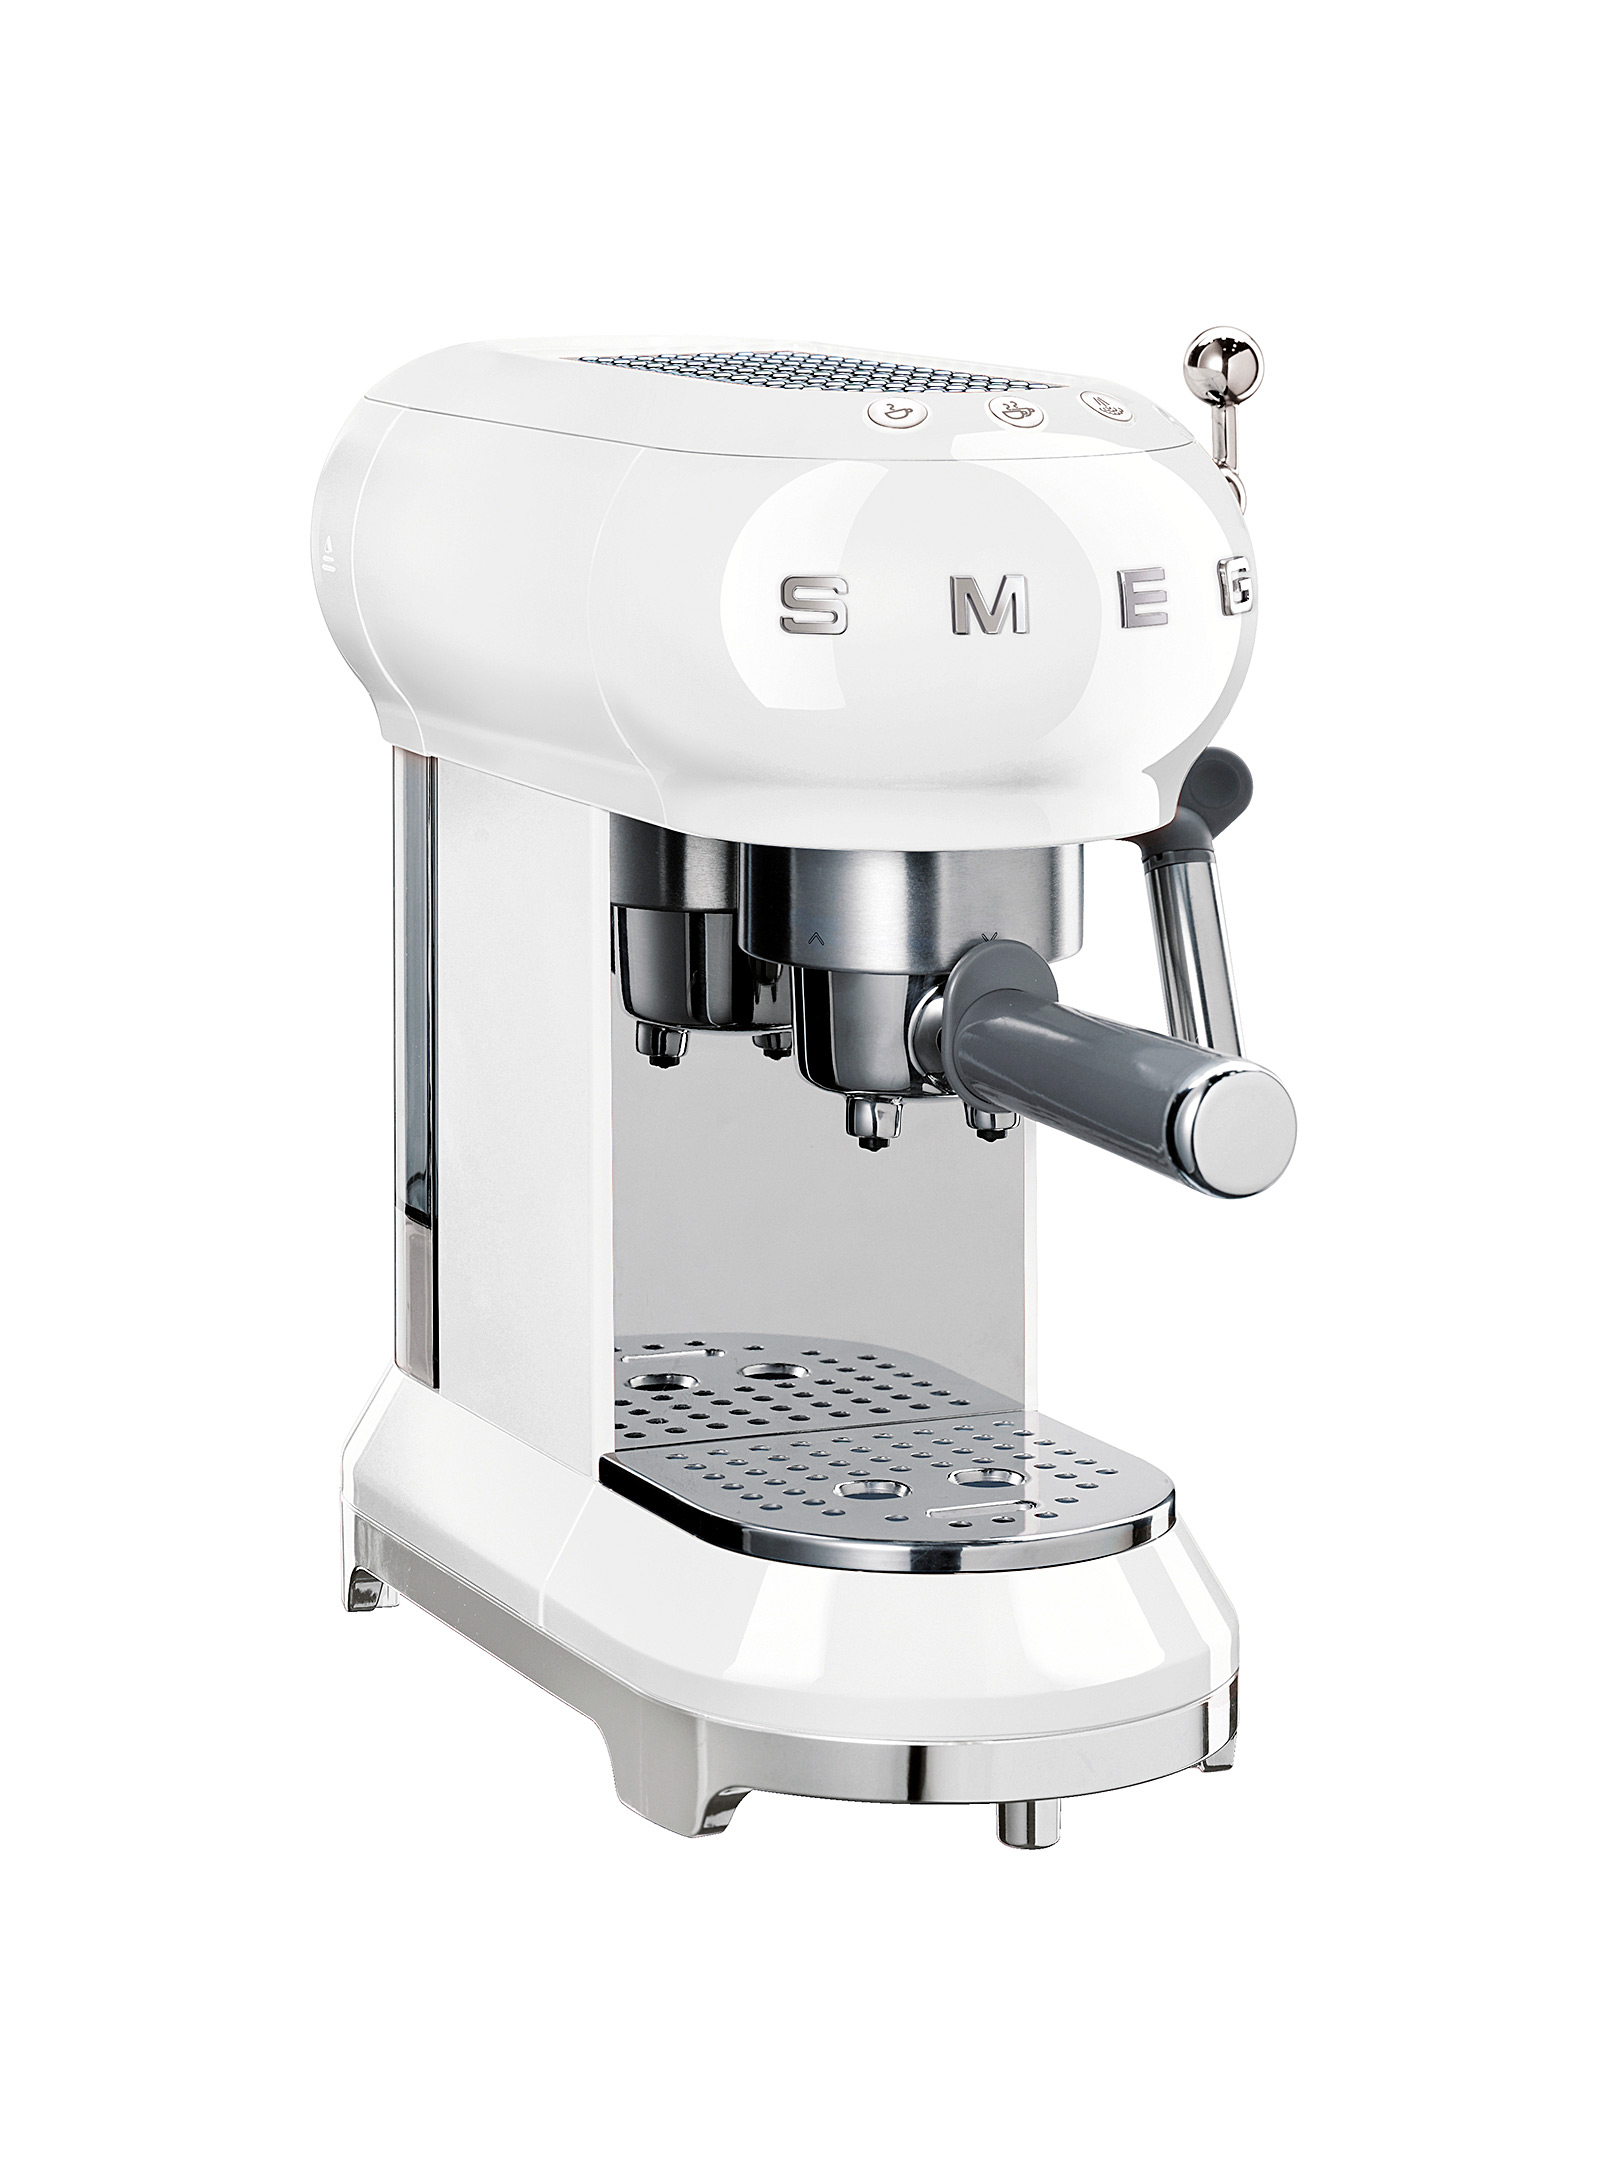 Smeg Manual Espresso Coffee Machine In White